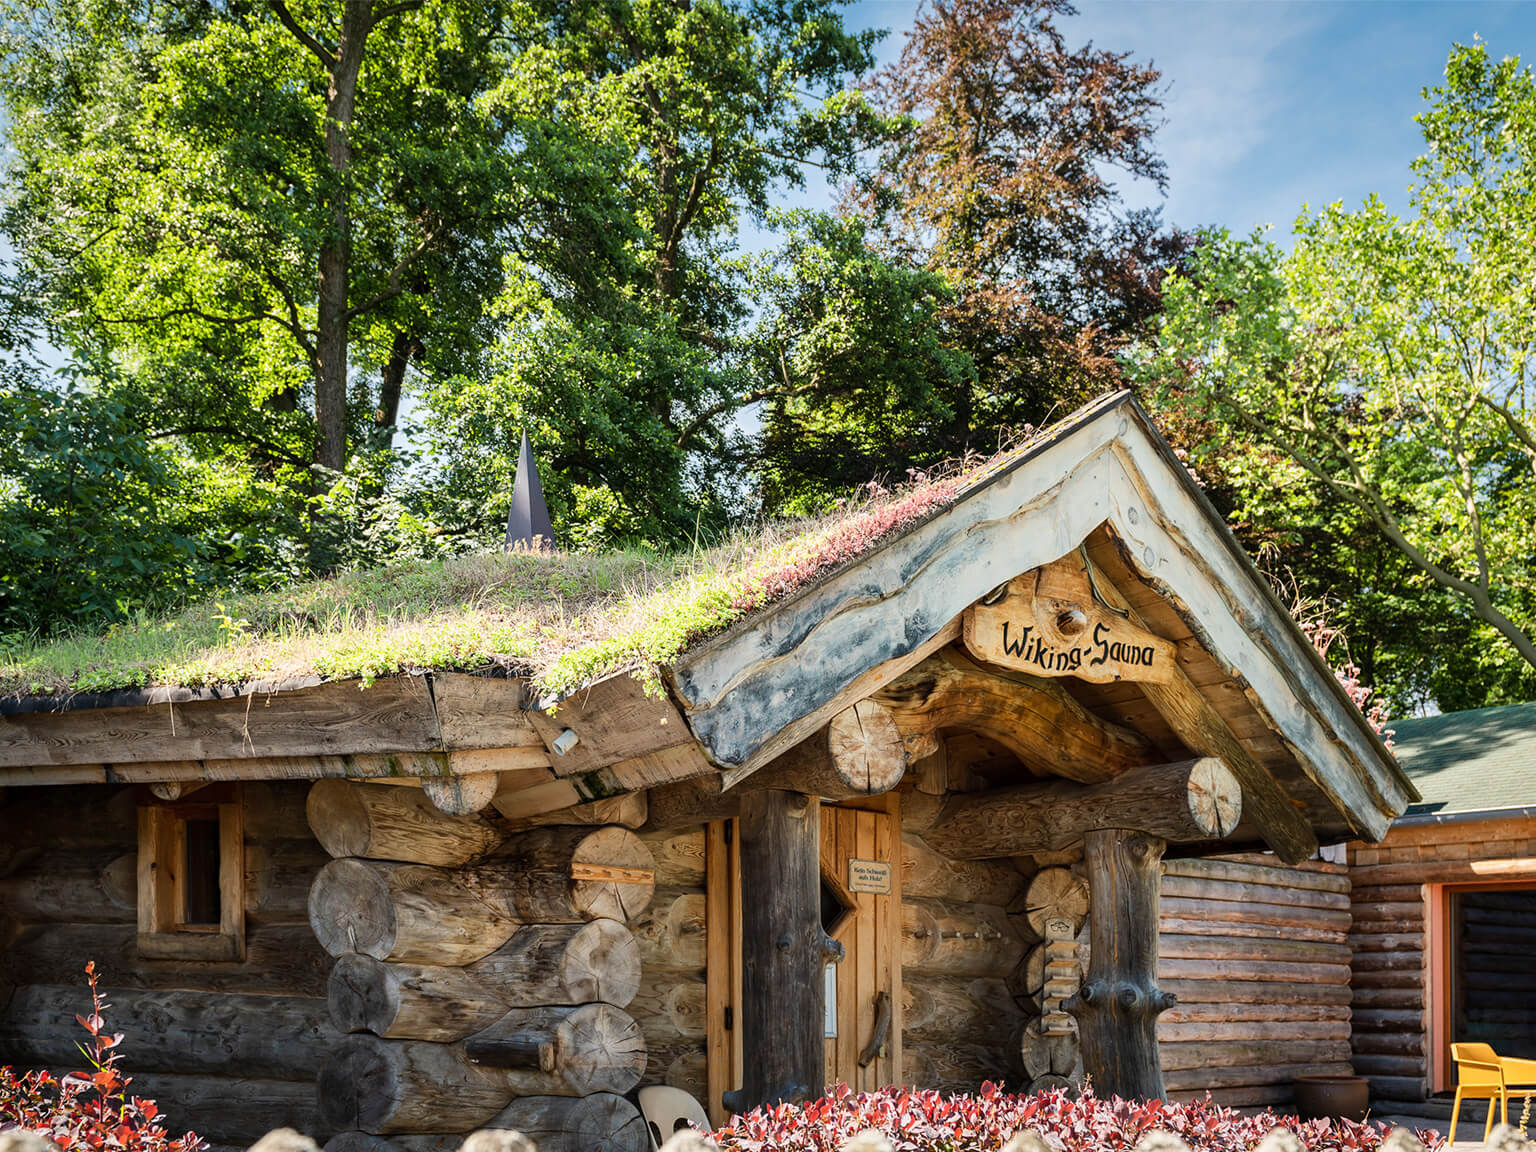 Die Wiking-Sauna, ein Haus aus dicken Holzstämmen mit Grasdach, im Hintergrund großer Baumbewuchs.